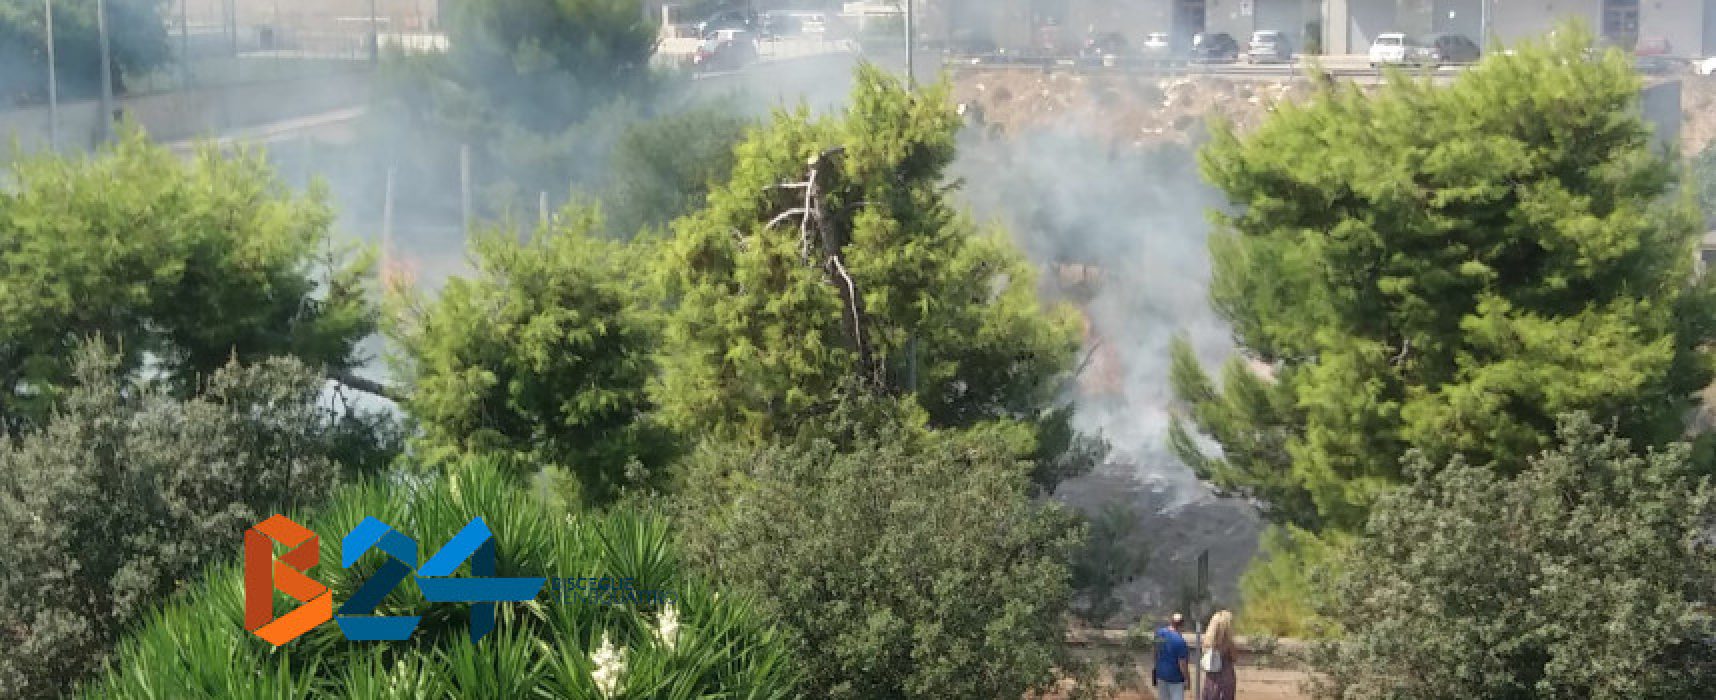 Incendio in un terreno in via Cala dell’Arciprete /VIDEO